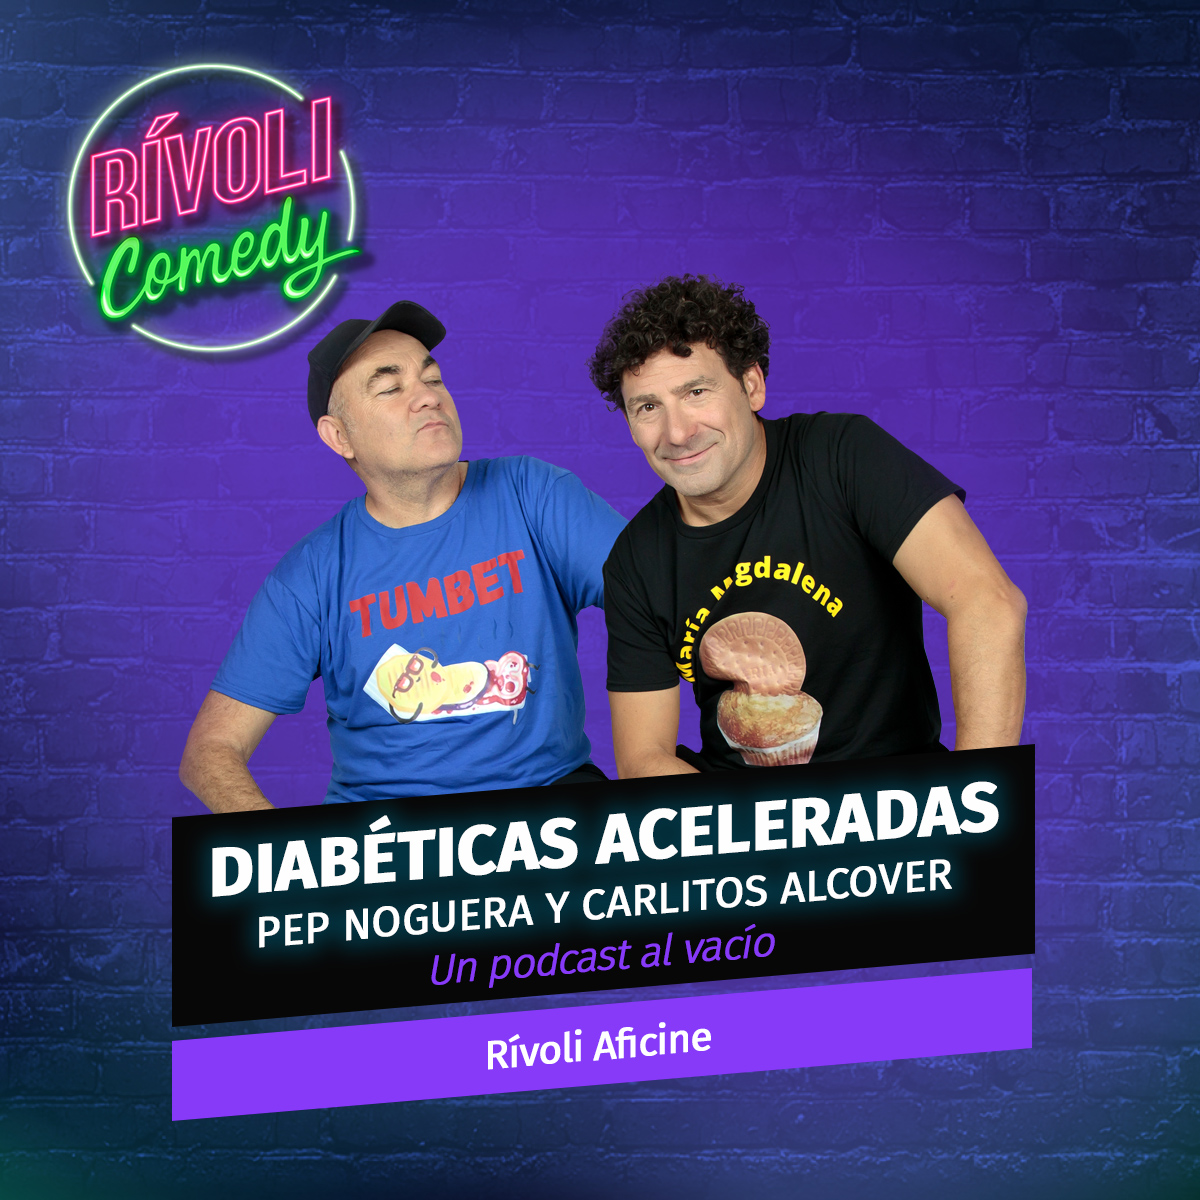 Diabéticas Aceleradas con Pep Noguera y Carlitos Alcover | Un podcast al vacío · 22 de diciembre · Palma de Mallorca (Rívoli Comedy)